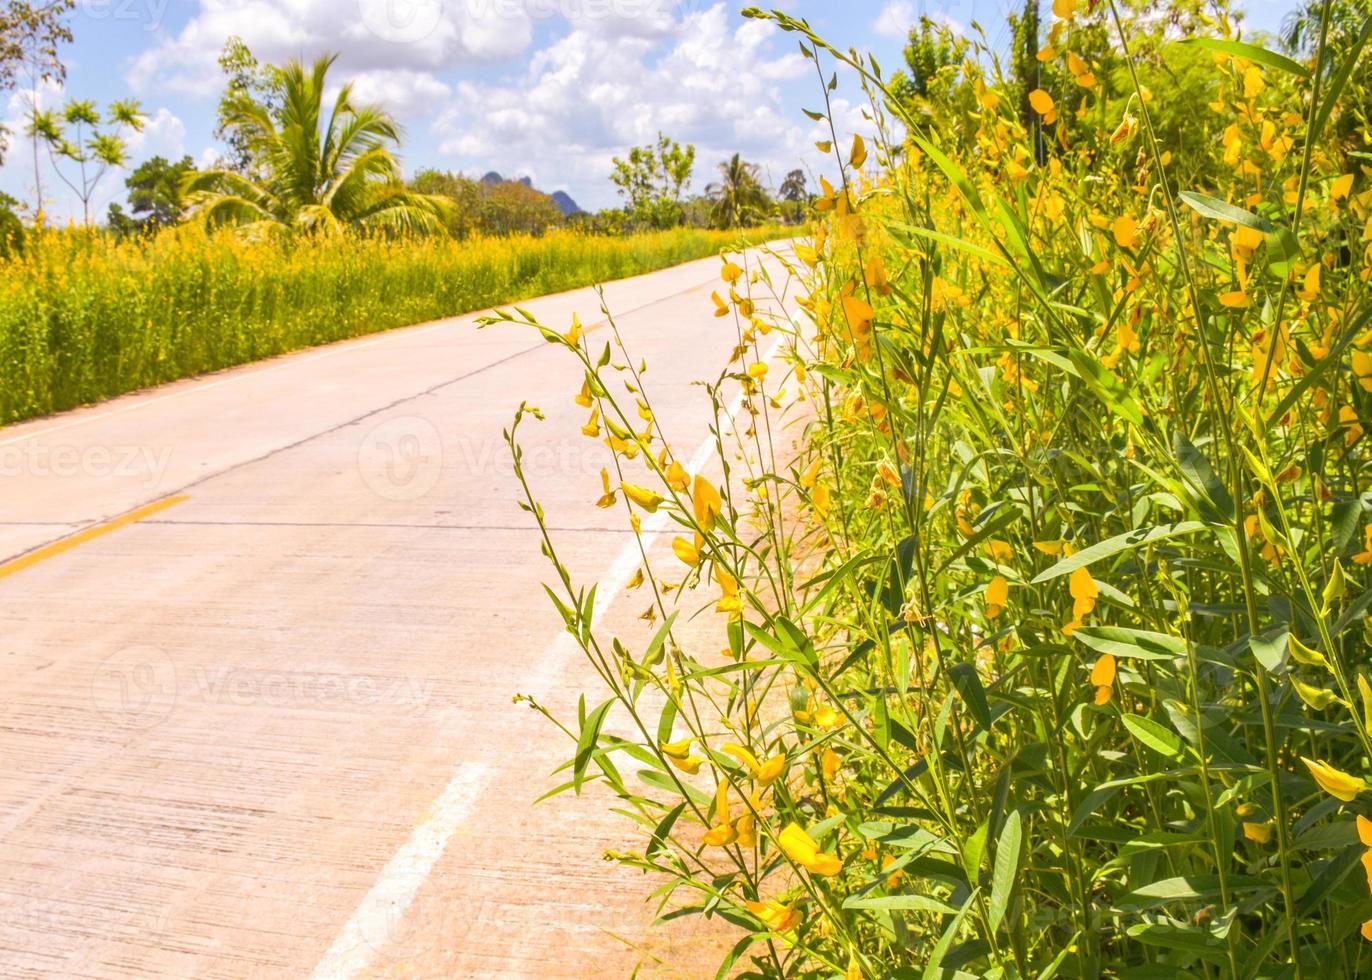 el camino de la belleza de las flores amarillas en el sur de tailandia foto